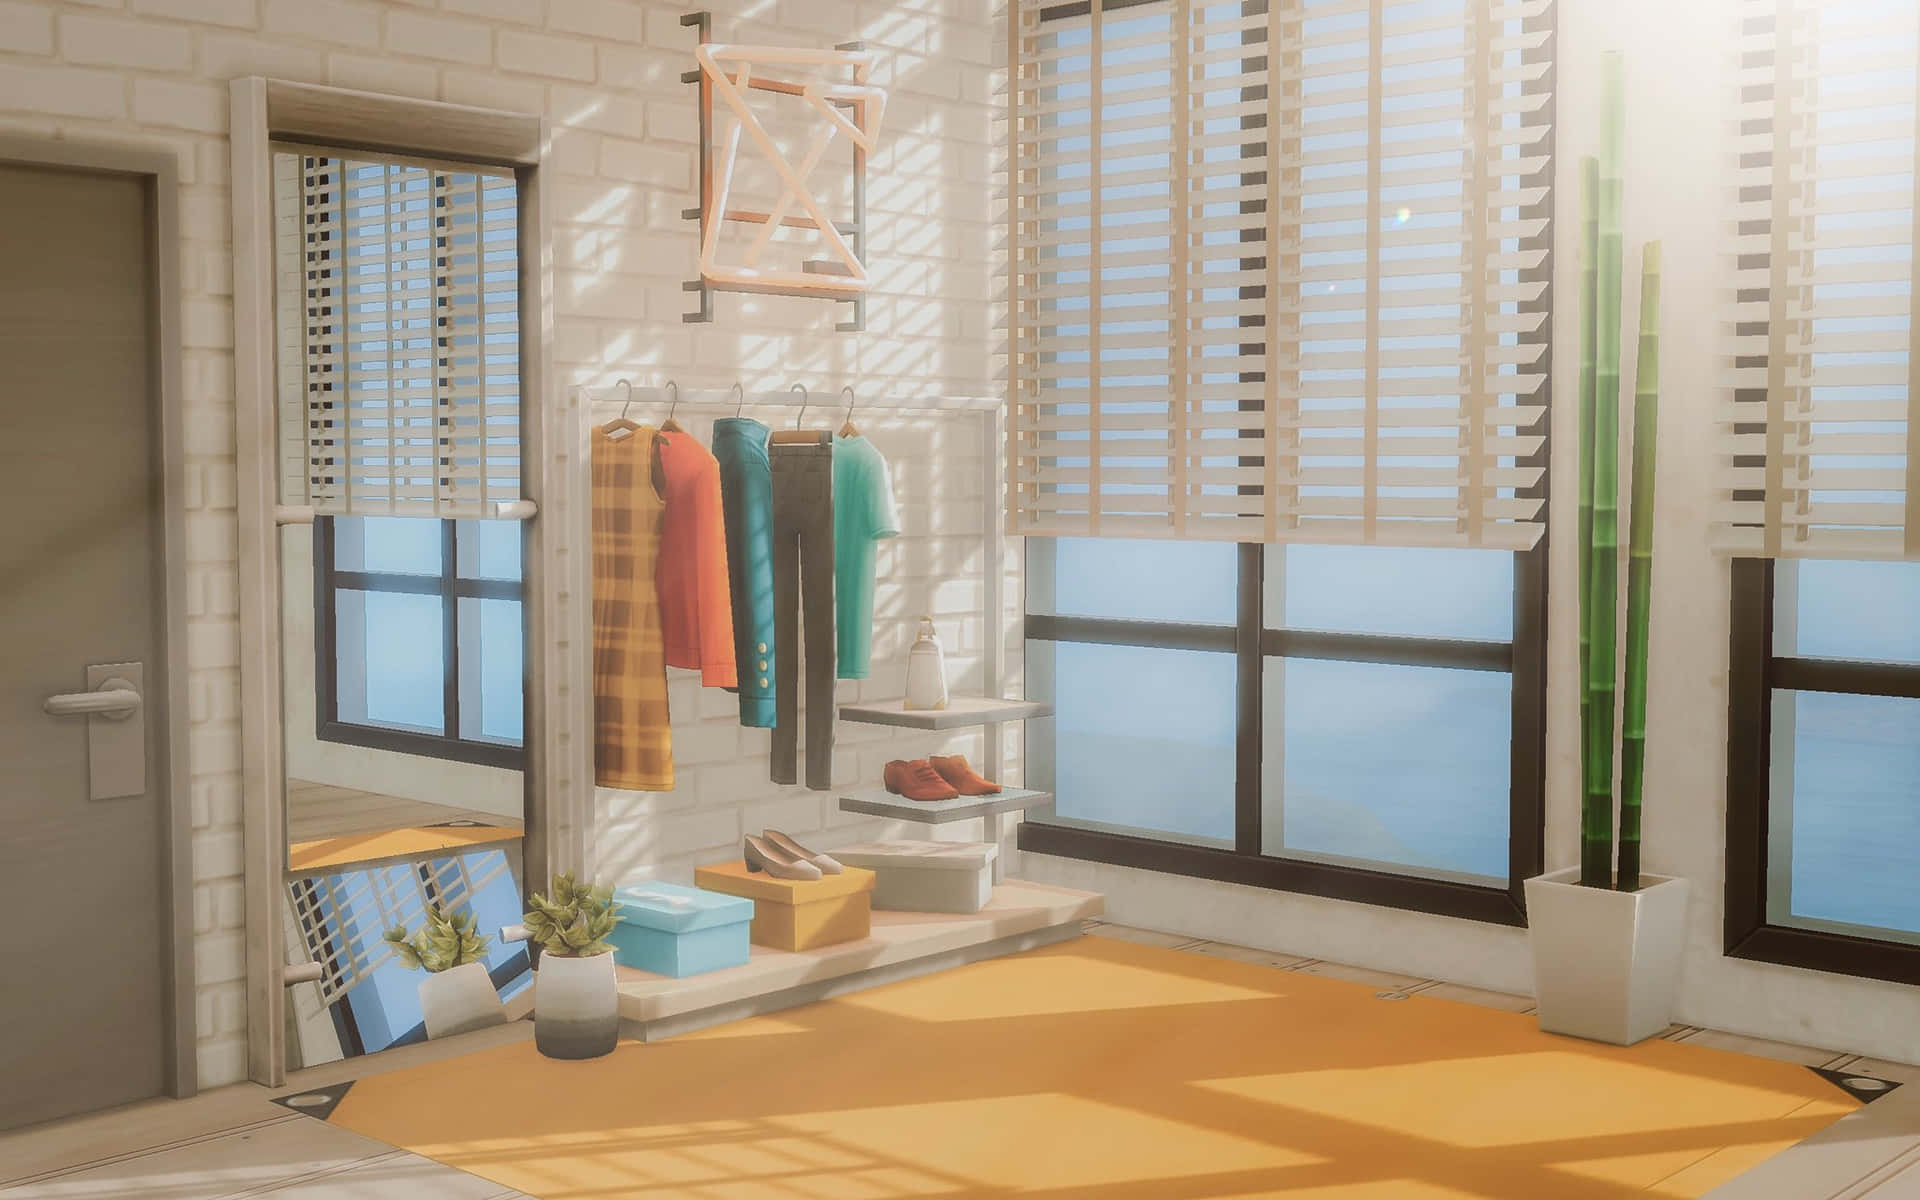 Digitaltbildomklädningsrum Sims 4 Cas-bakgrund